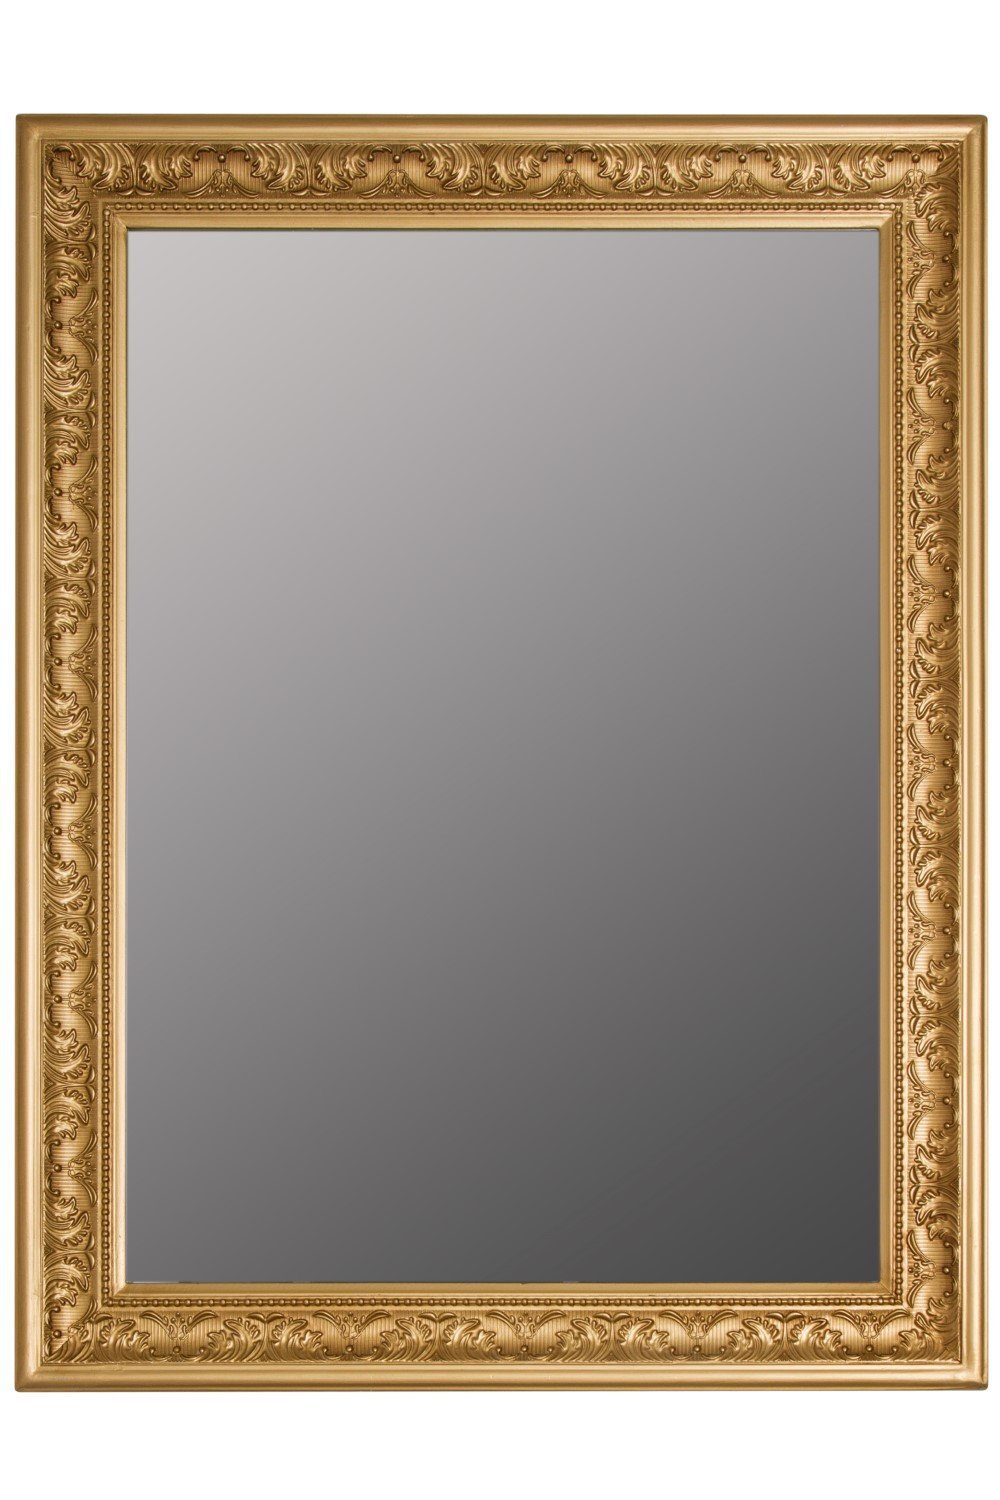 - Spiegel: cm Wandspiegel Spiegel Ankleidespiegel Barock Facettenschliff Barock Antik 62x52x7 Ganzkörperspiegel, Rahmen Stil mit silber elbmöbel Wandspiegel Wandspiegel